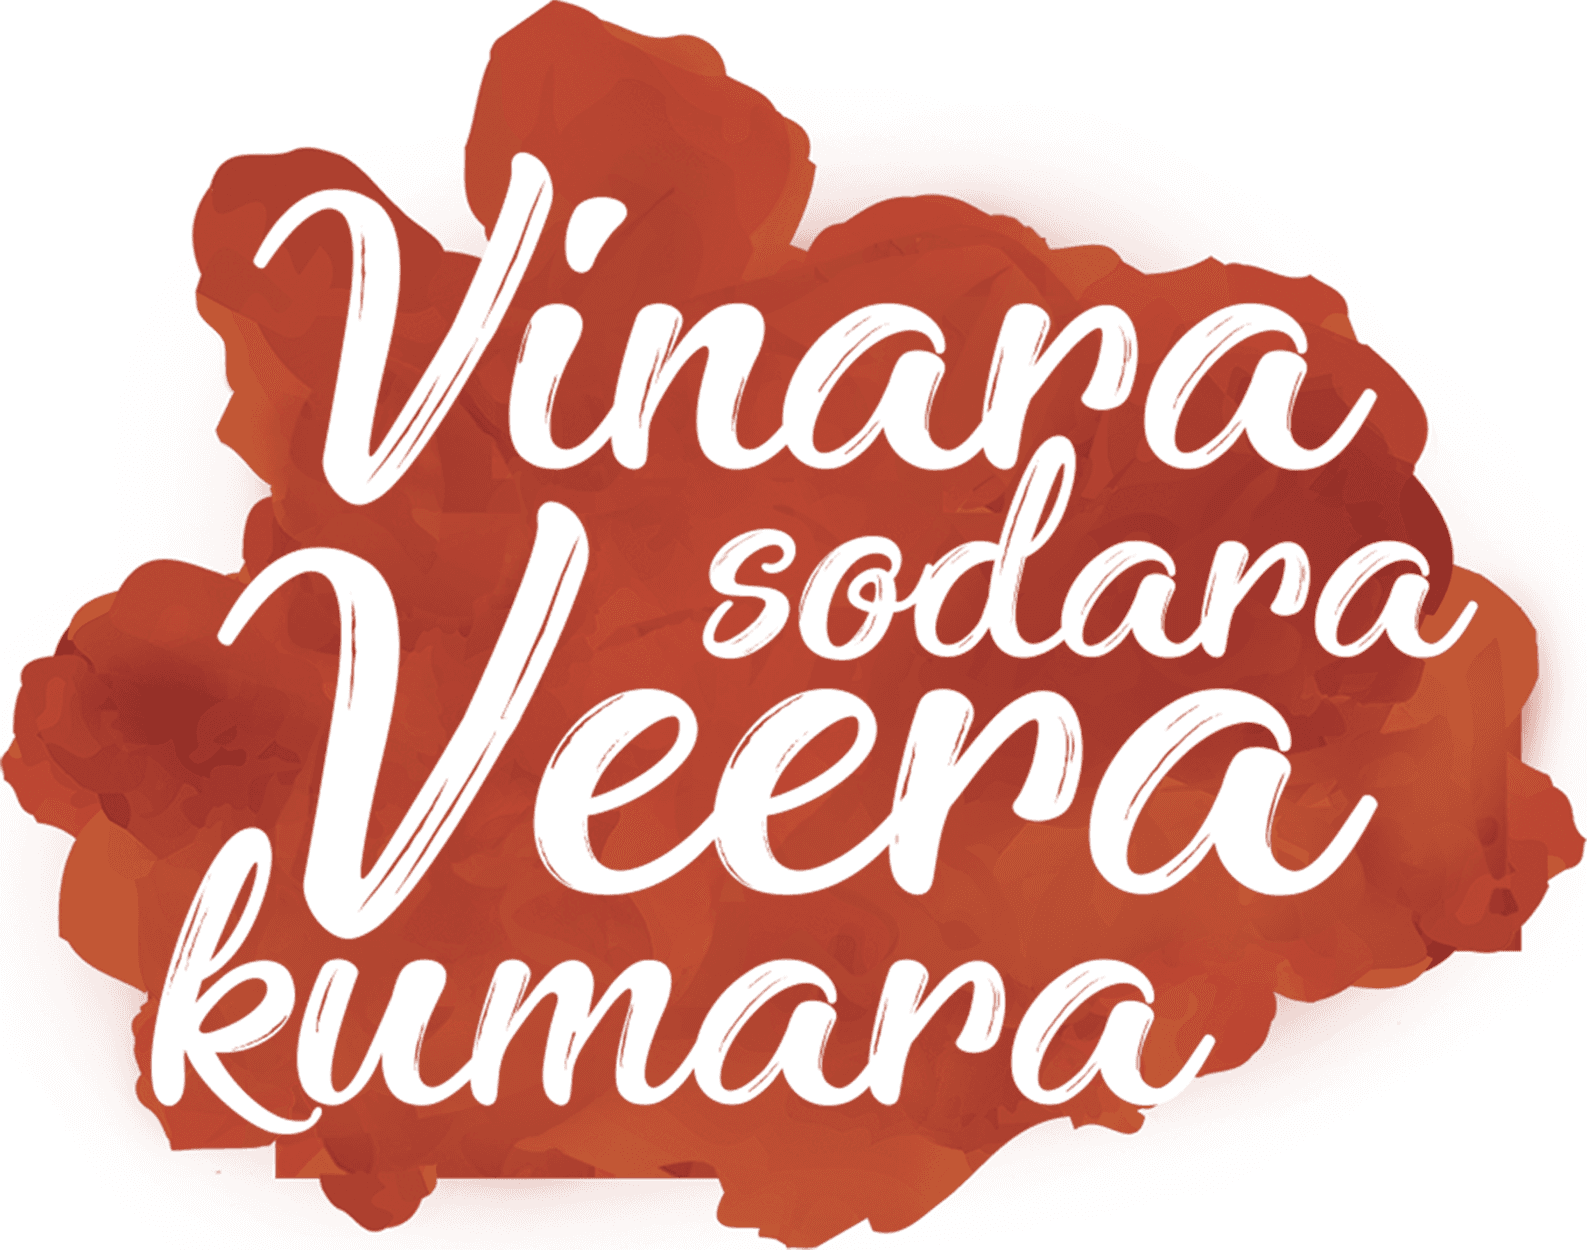 Vinara Sodara Veera Kumara logo